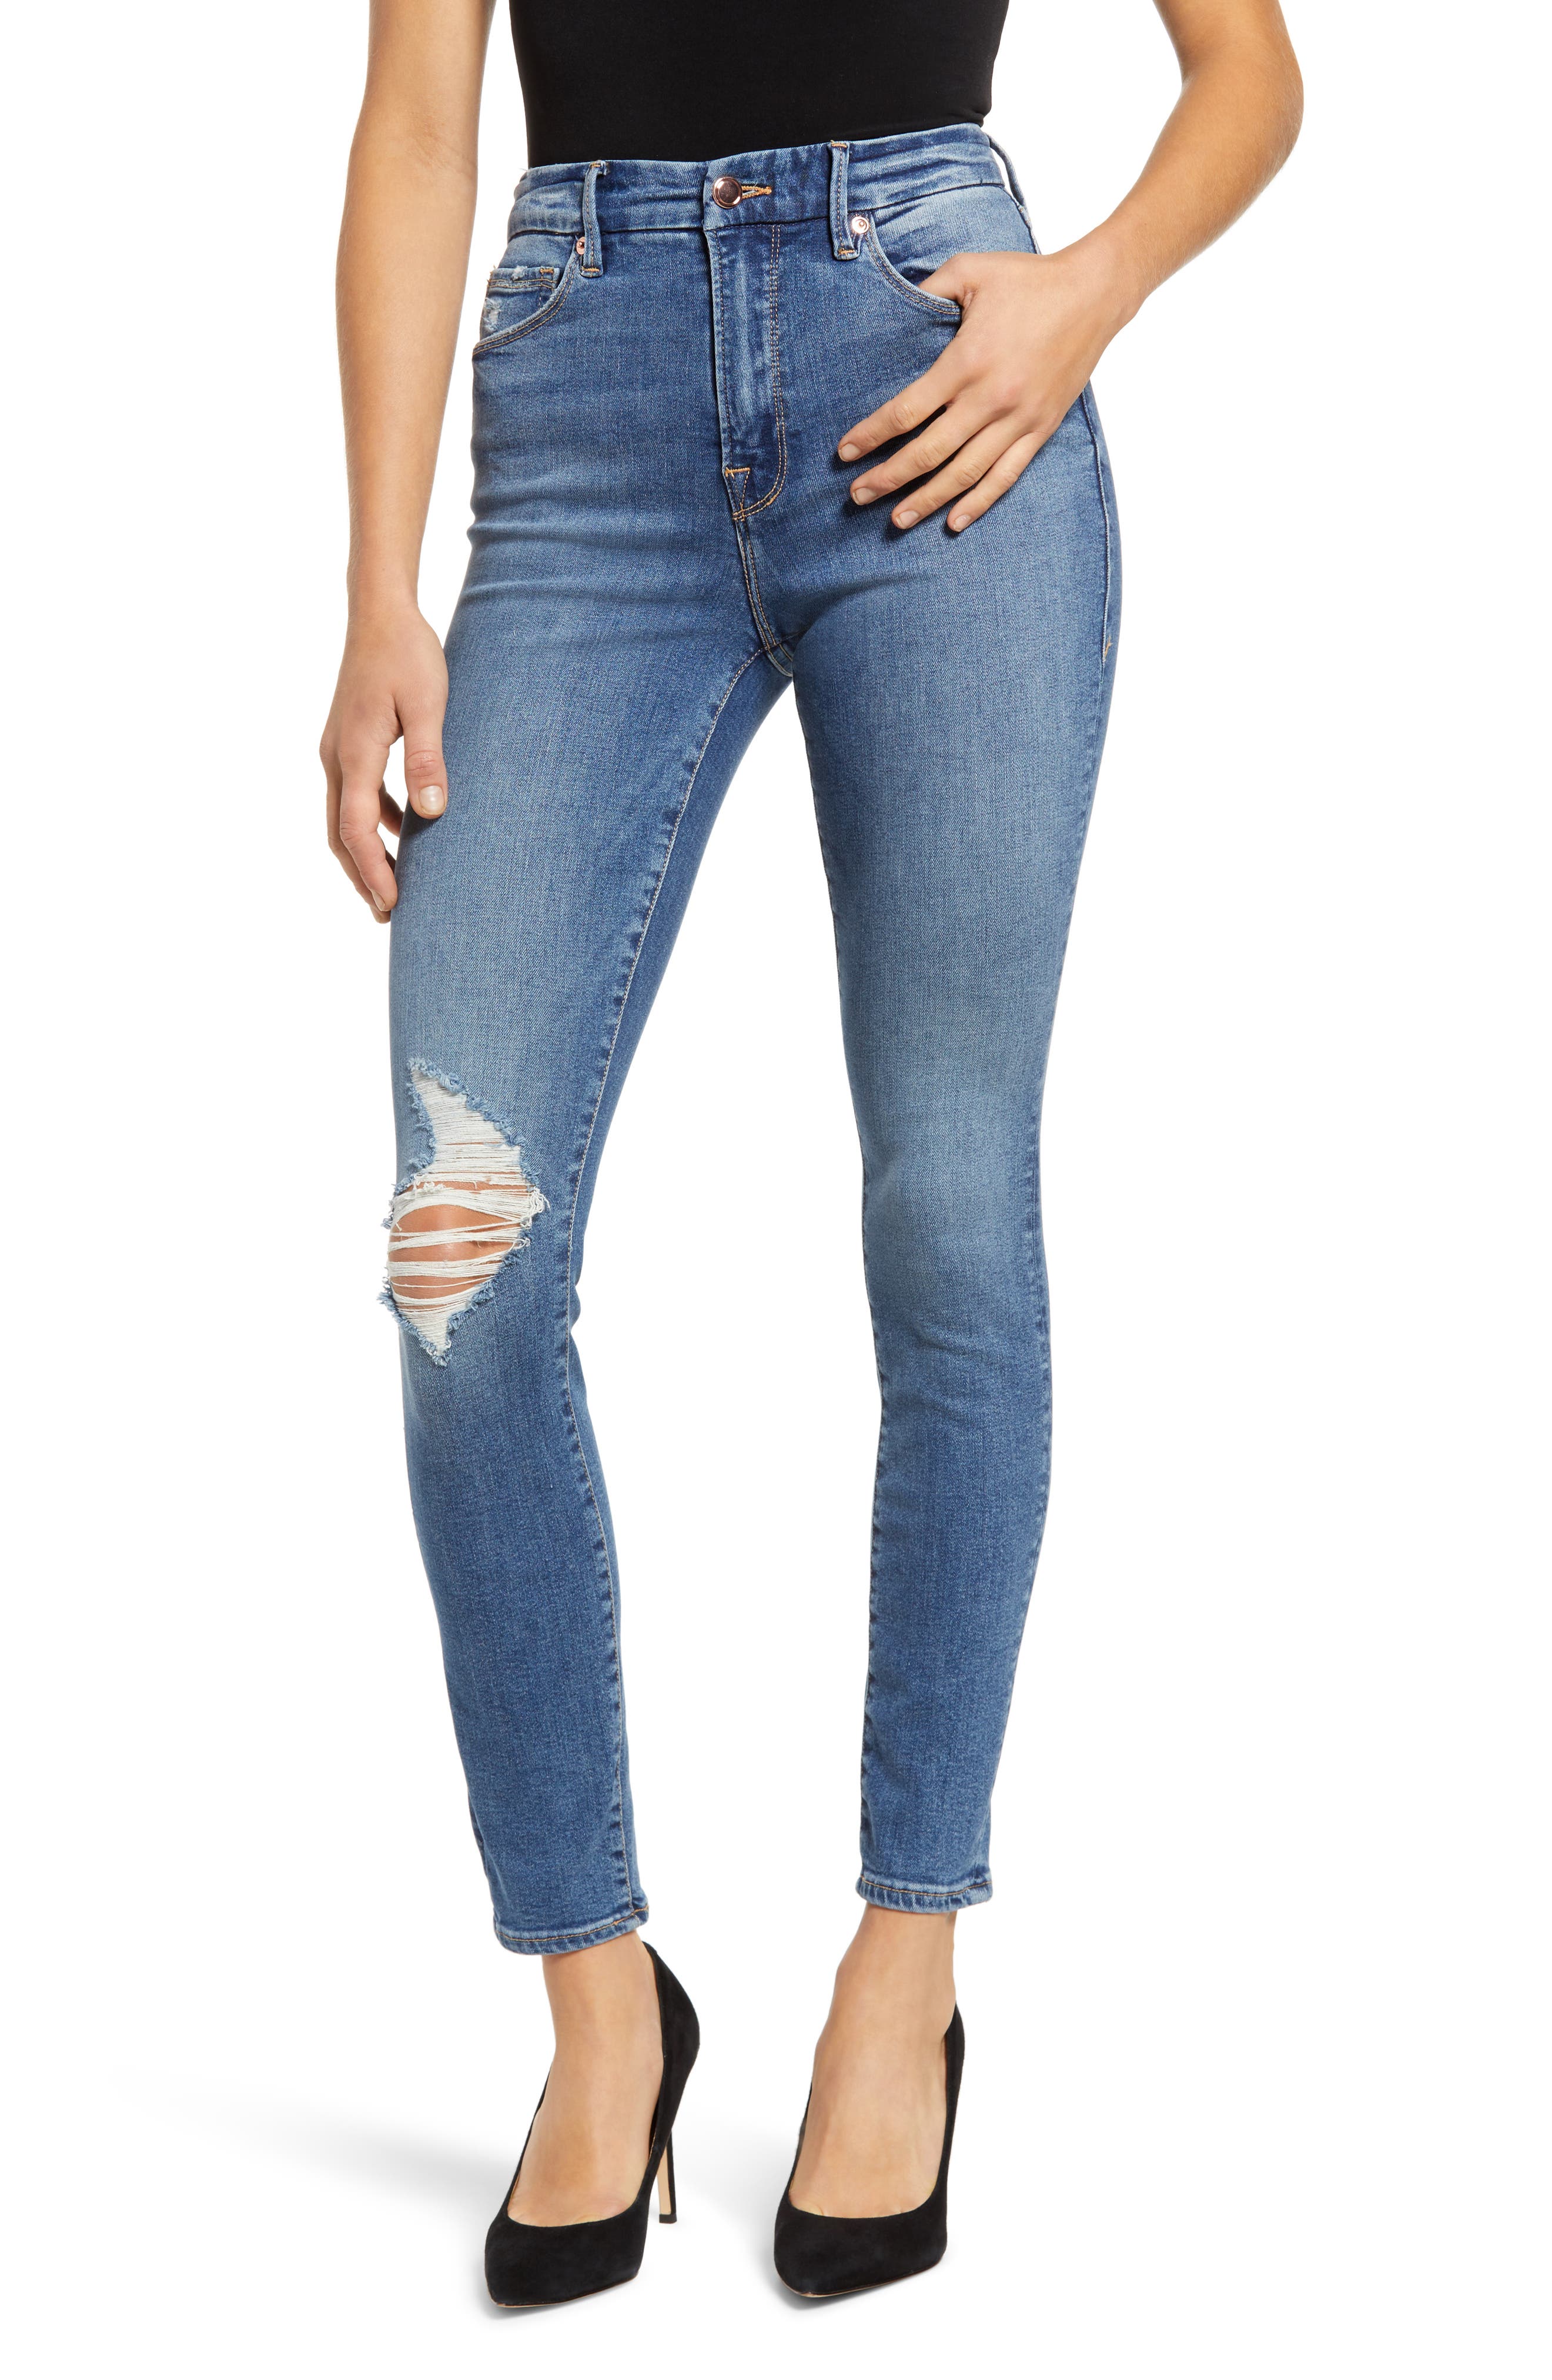 women's blue jeans on sale